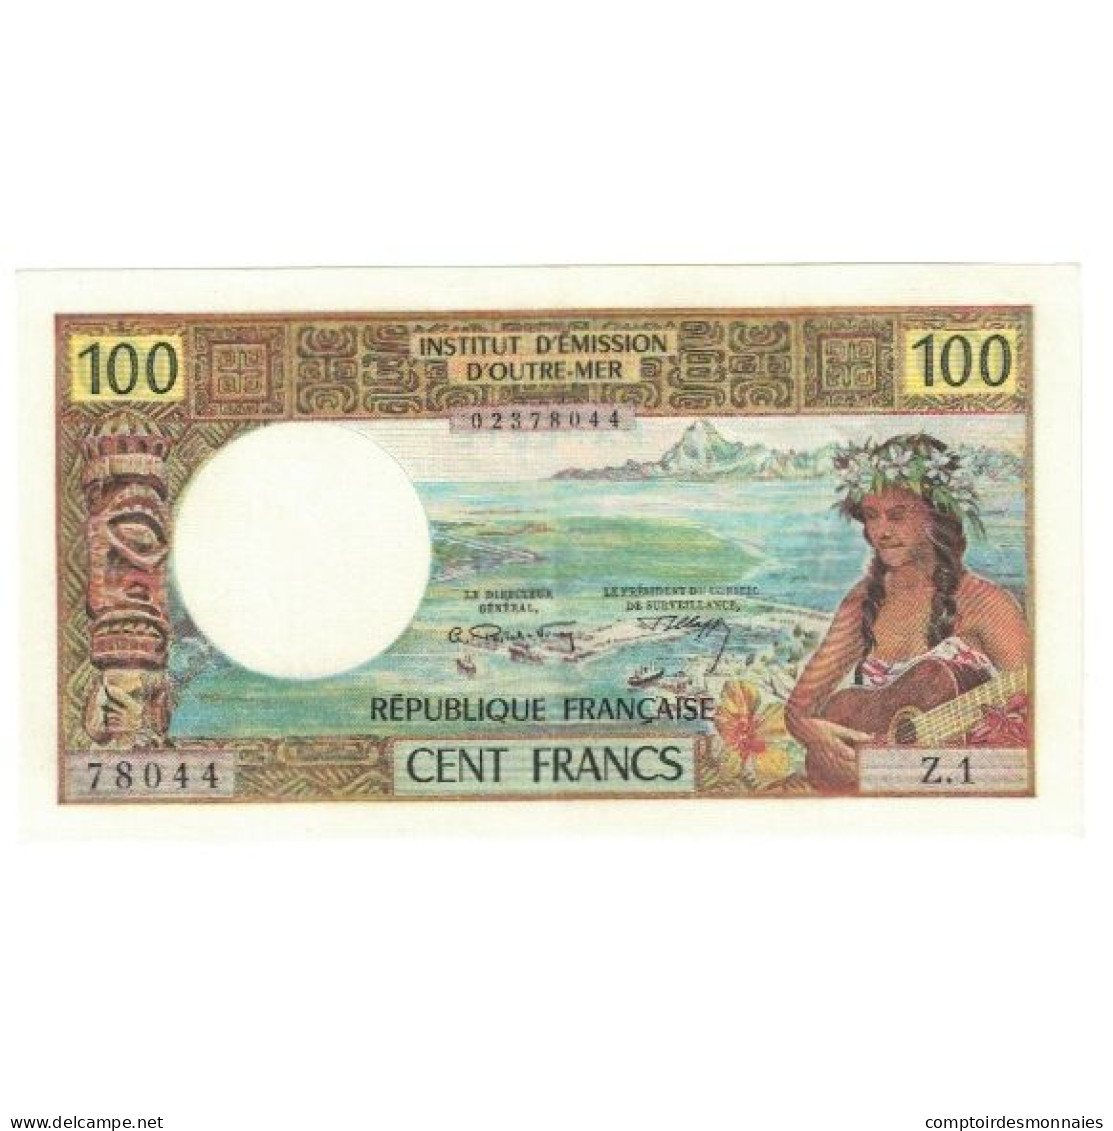 Tahiti, 100 Francs, SPL - Papeete (Frans-Polynesië 1914-1985)